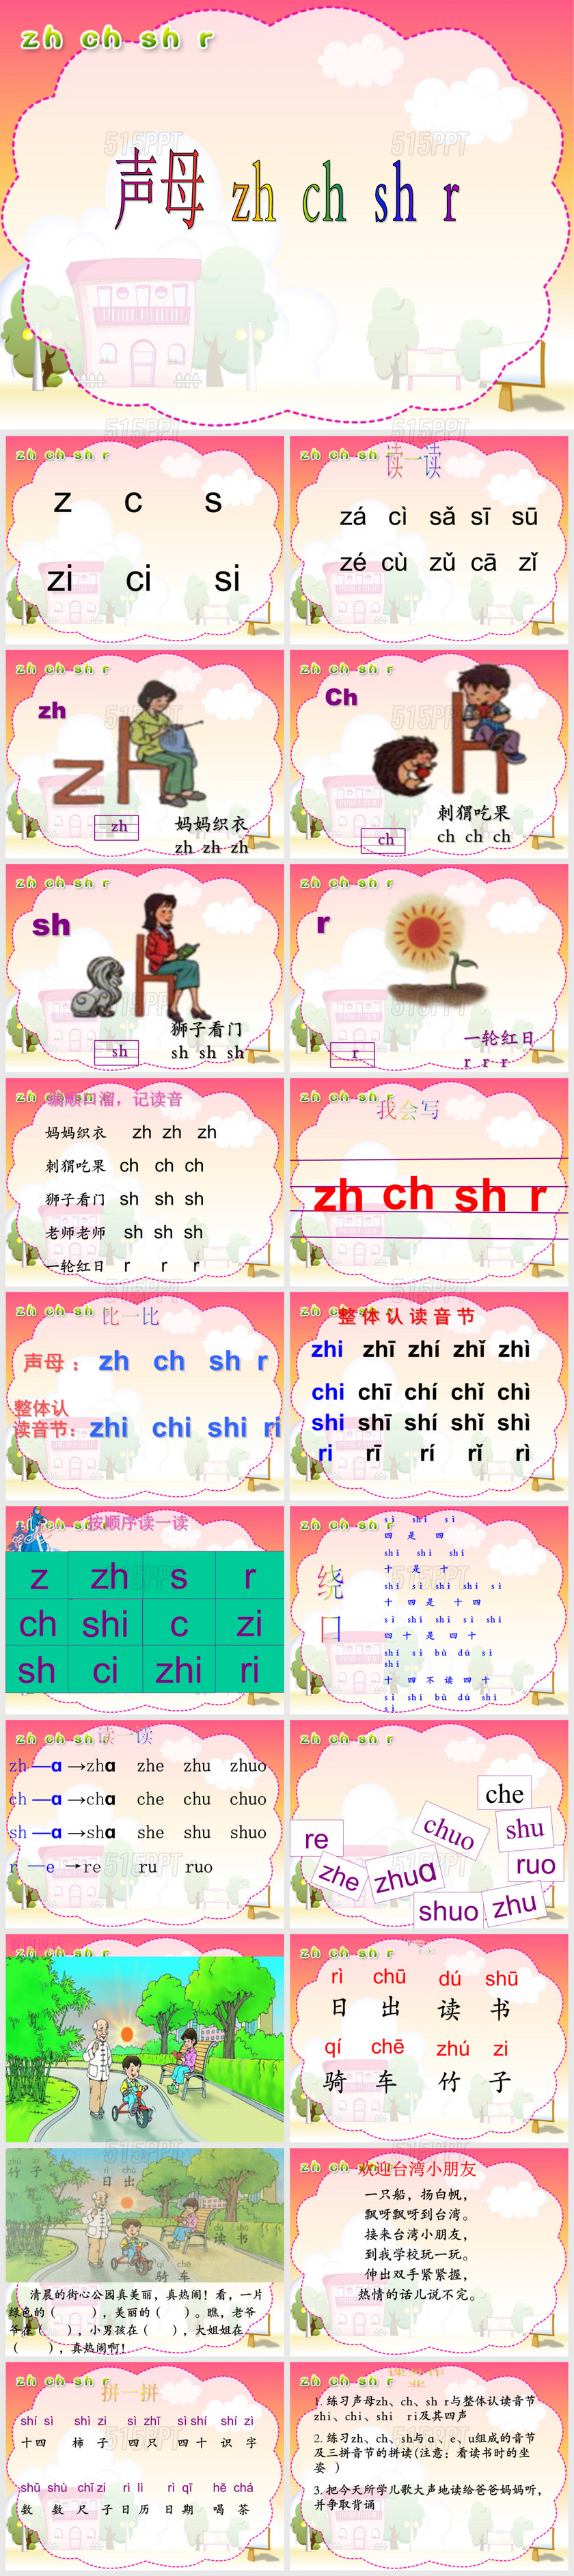 人教版小学语文一年级上册汉语拼音《zhchshr》PPT课件(好全)